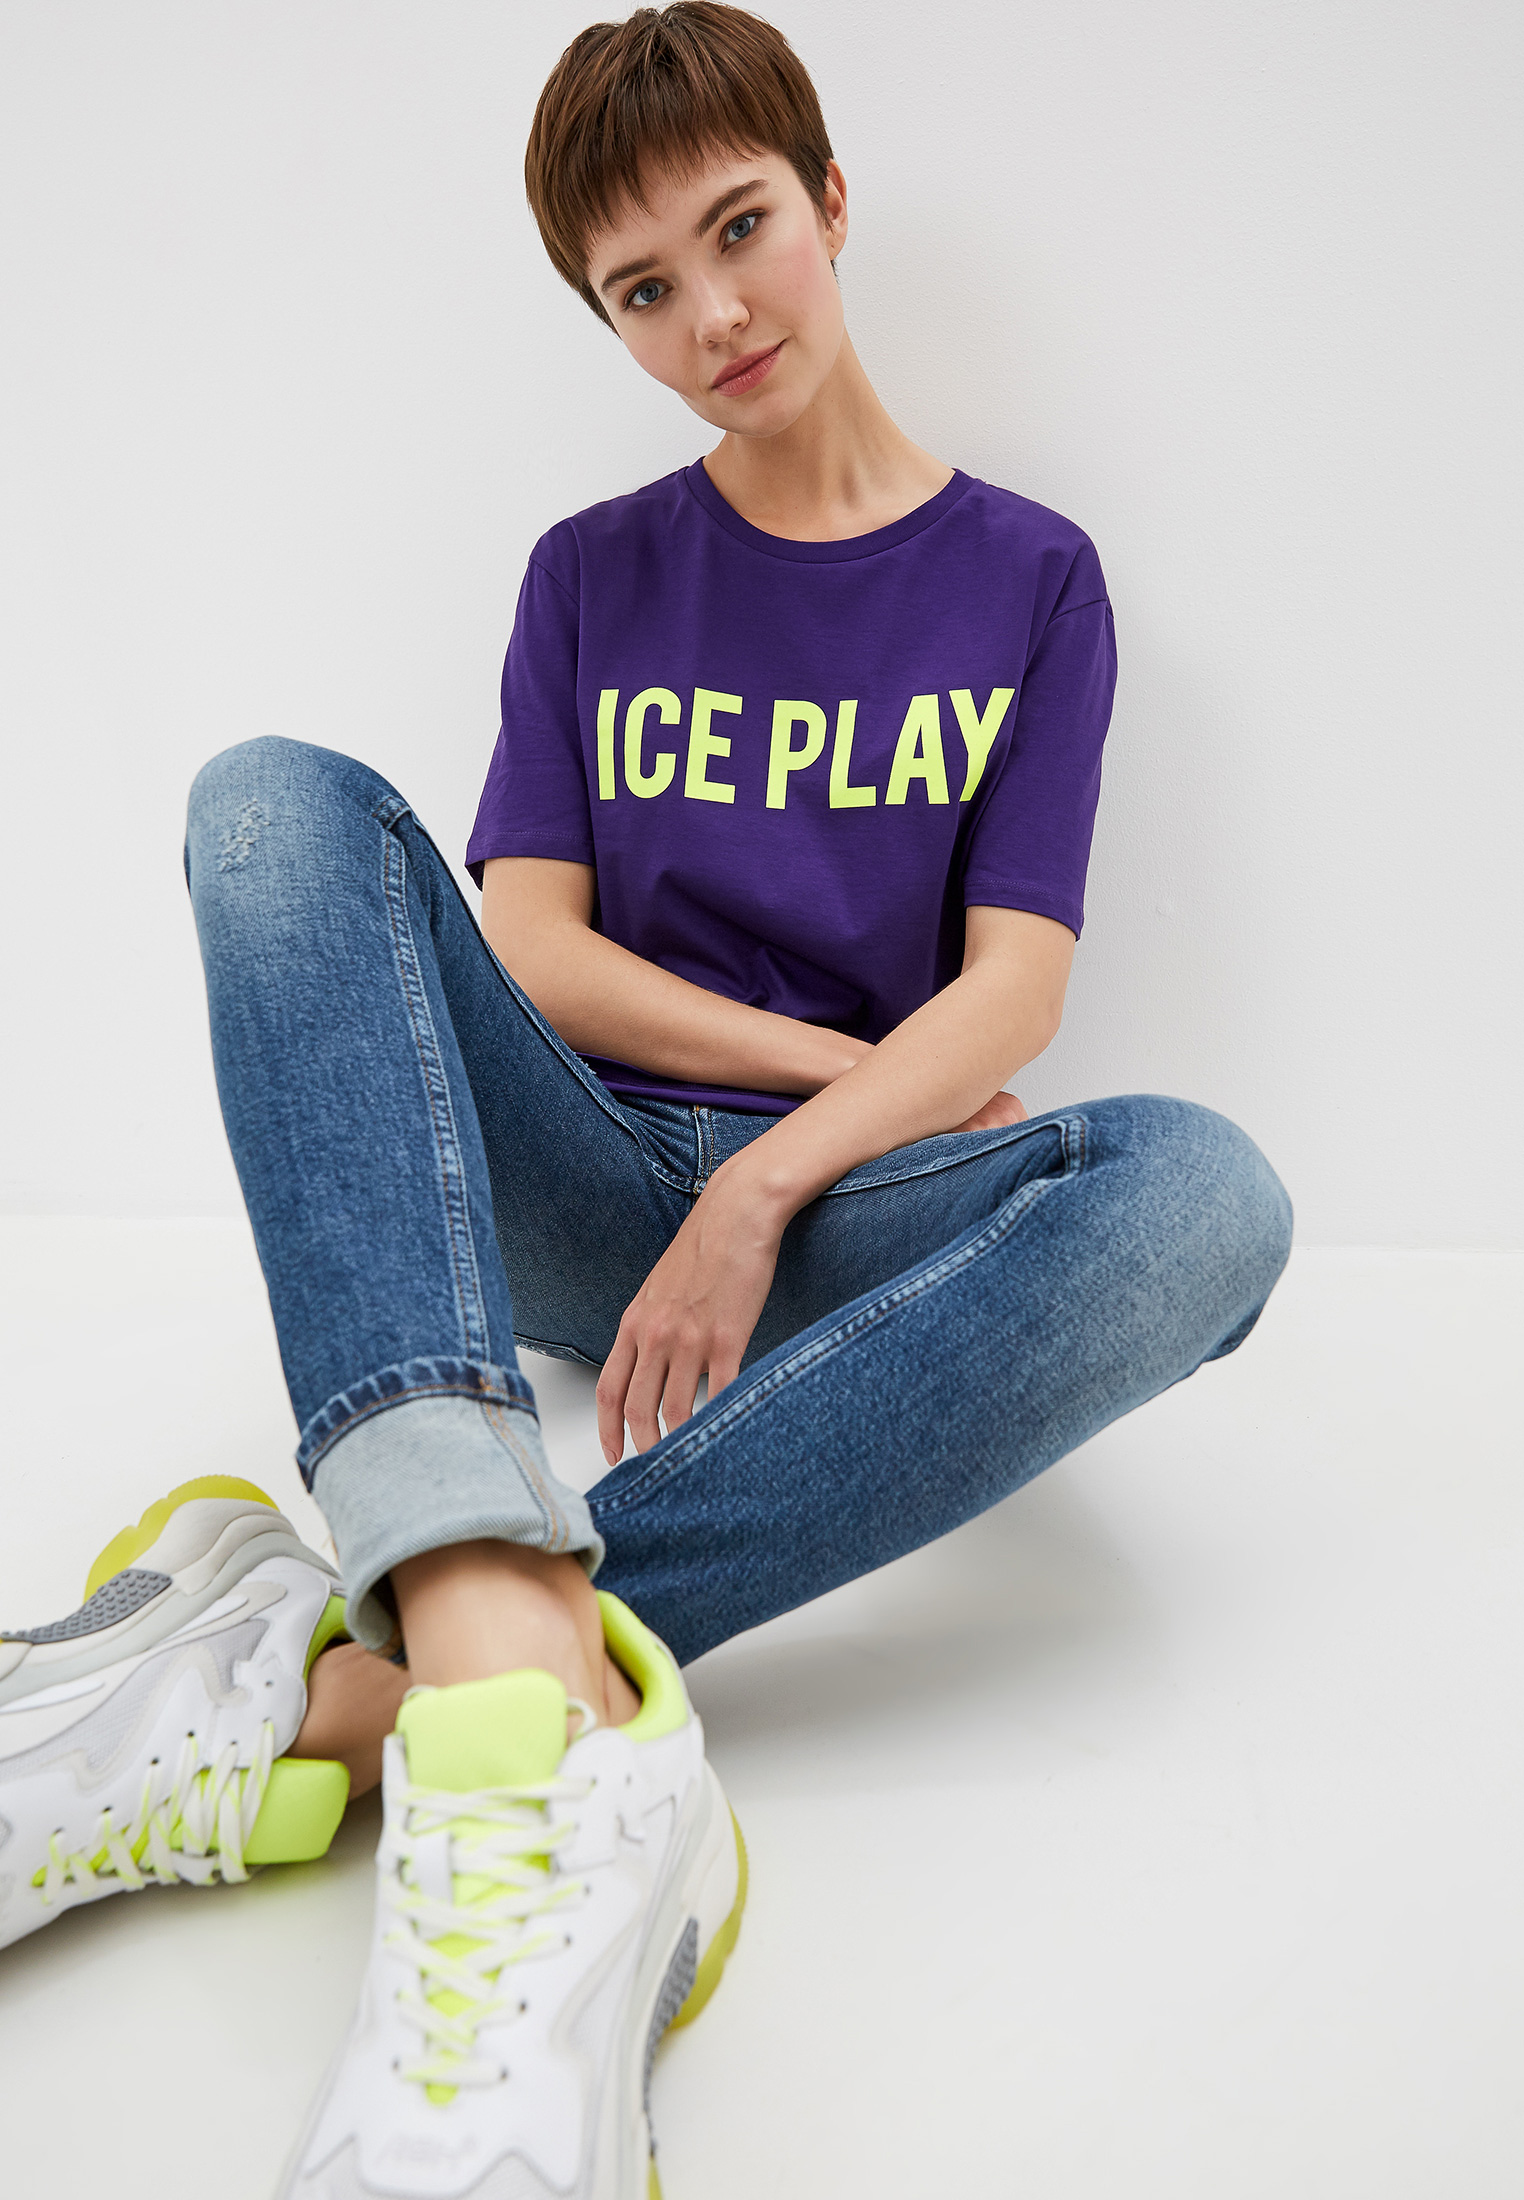 Одежда айс. Ice Play одежда. Футболка Ice Play фиолетовая. Кроссовки Ice Play.